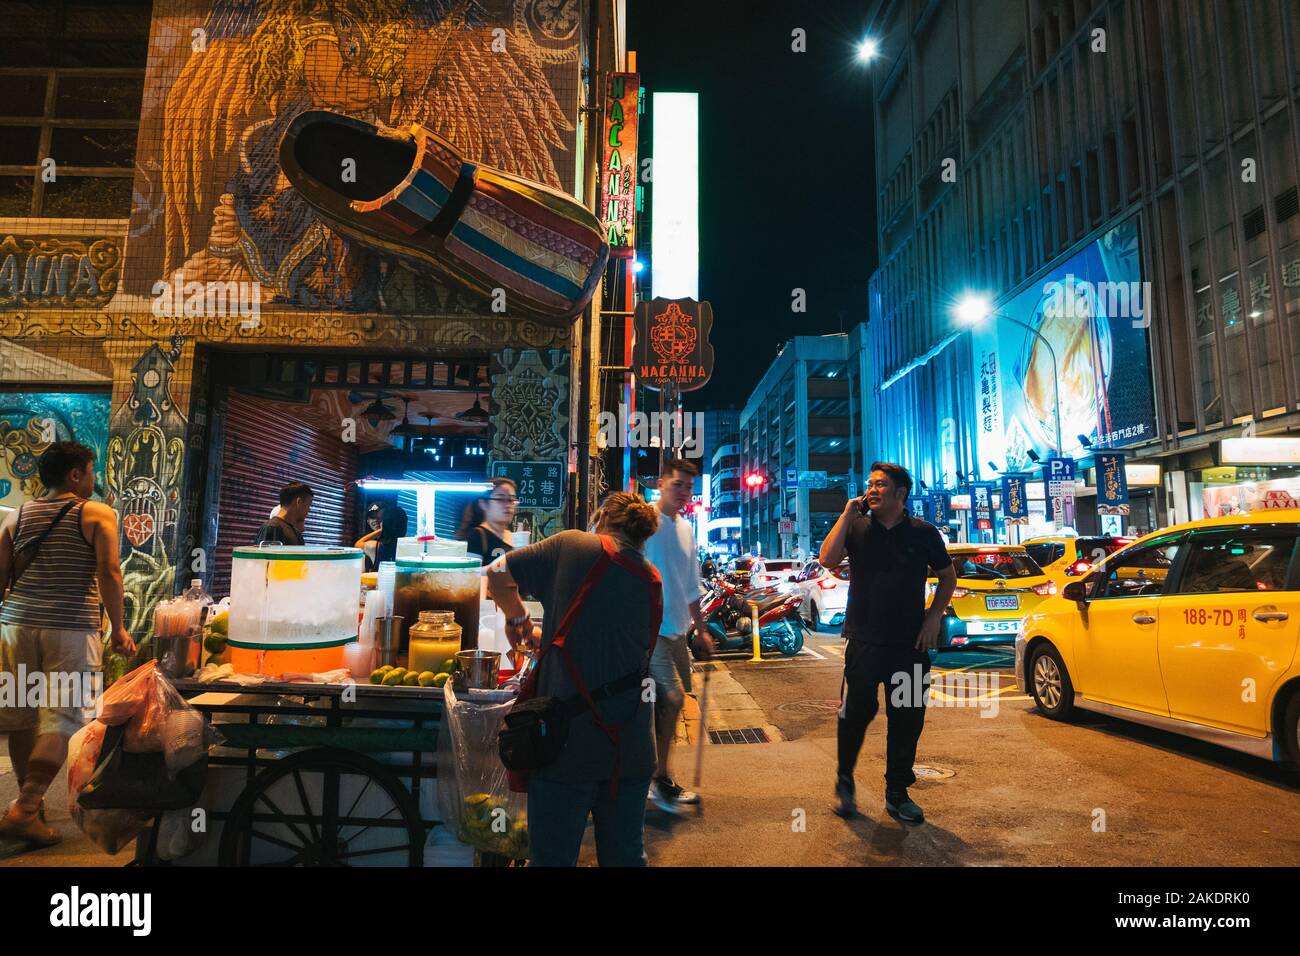 Un vendedor de la calle vende refrescos en una esquina de la calle, un hombre habla por teléfono y un clog gigante está montado en la pared de una tienda de zapatos Foto de stock